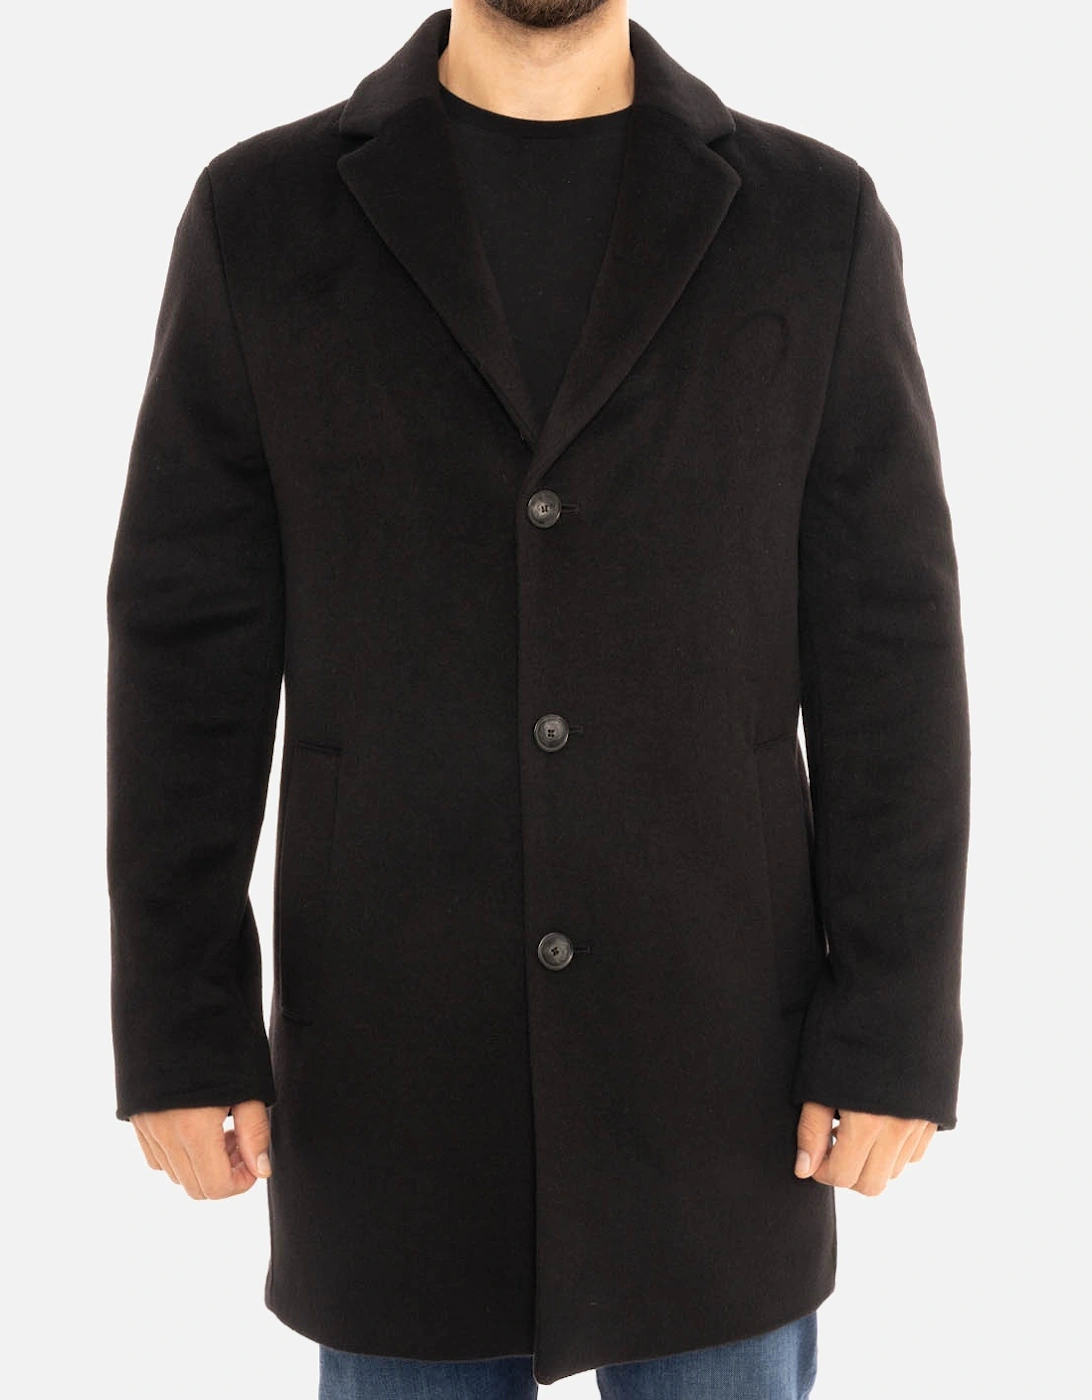 Mens Wool Coat (Black), 8 of 7